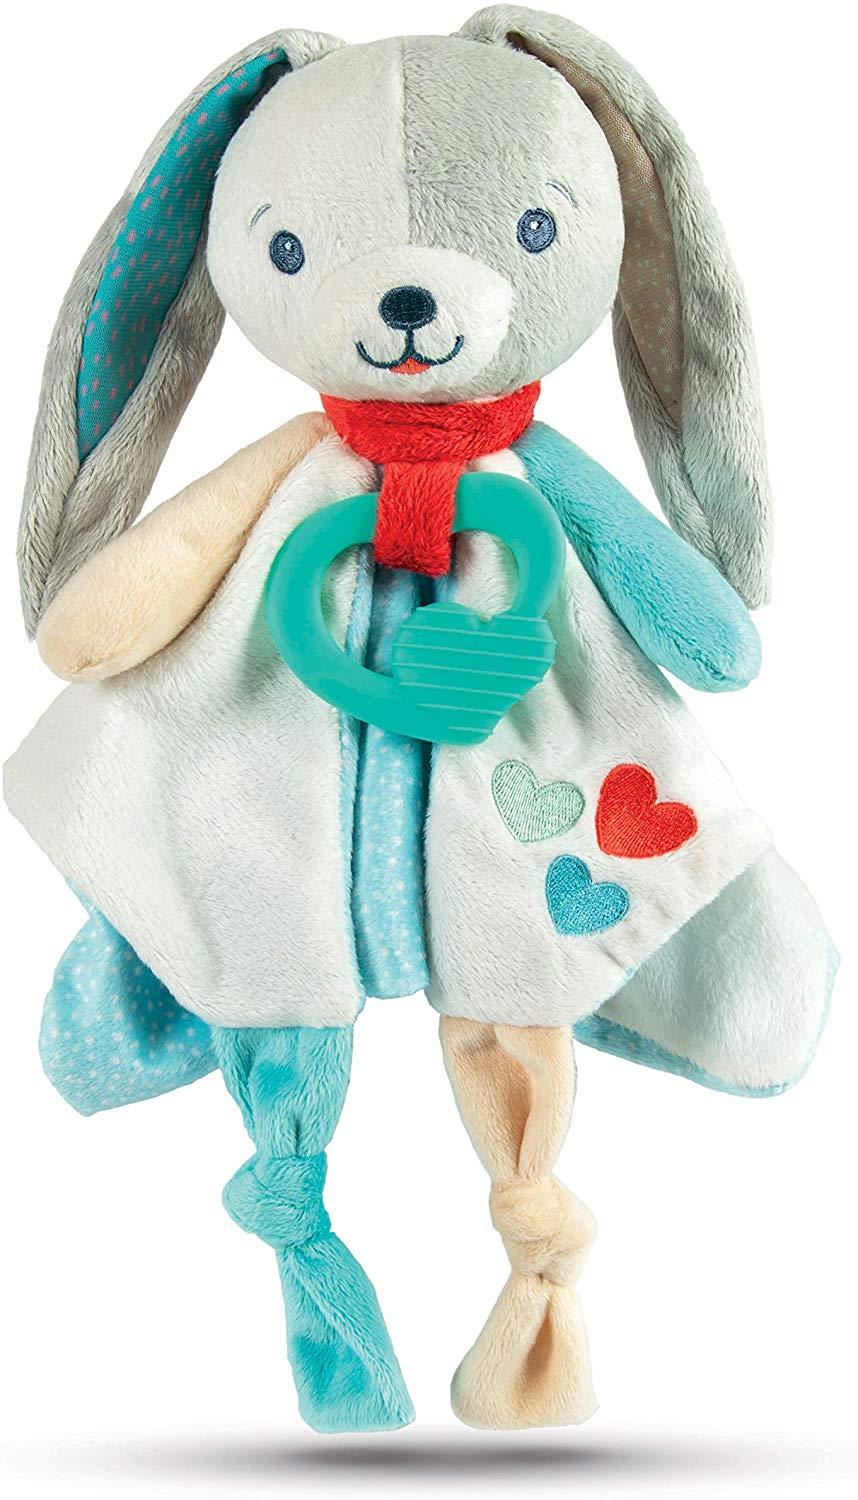 Sweet Bunny Comforter Plush Clementoni 17272b 8005125172726